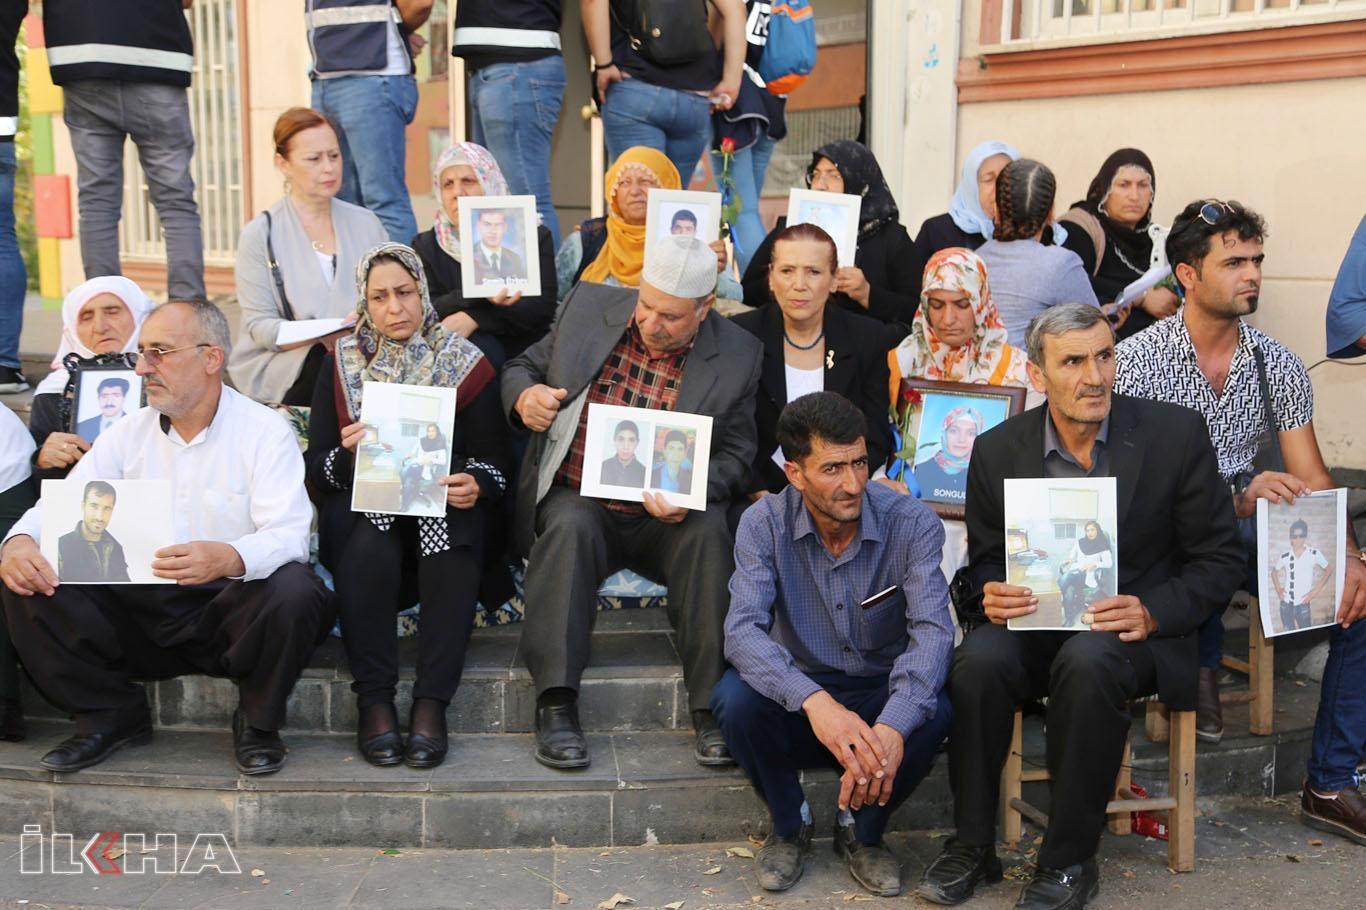 5 خانواده ایرانی در تحصن شرکت کردند